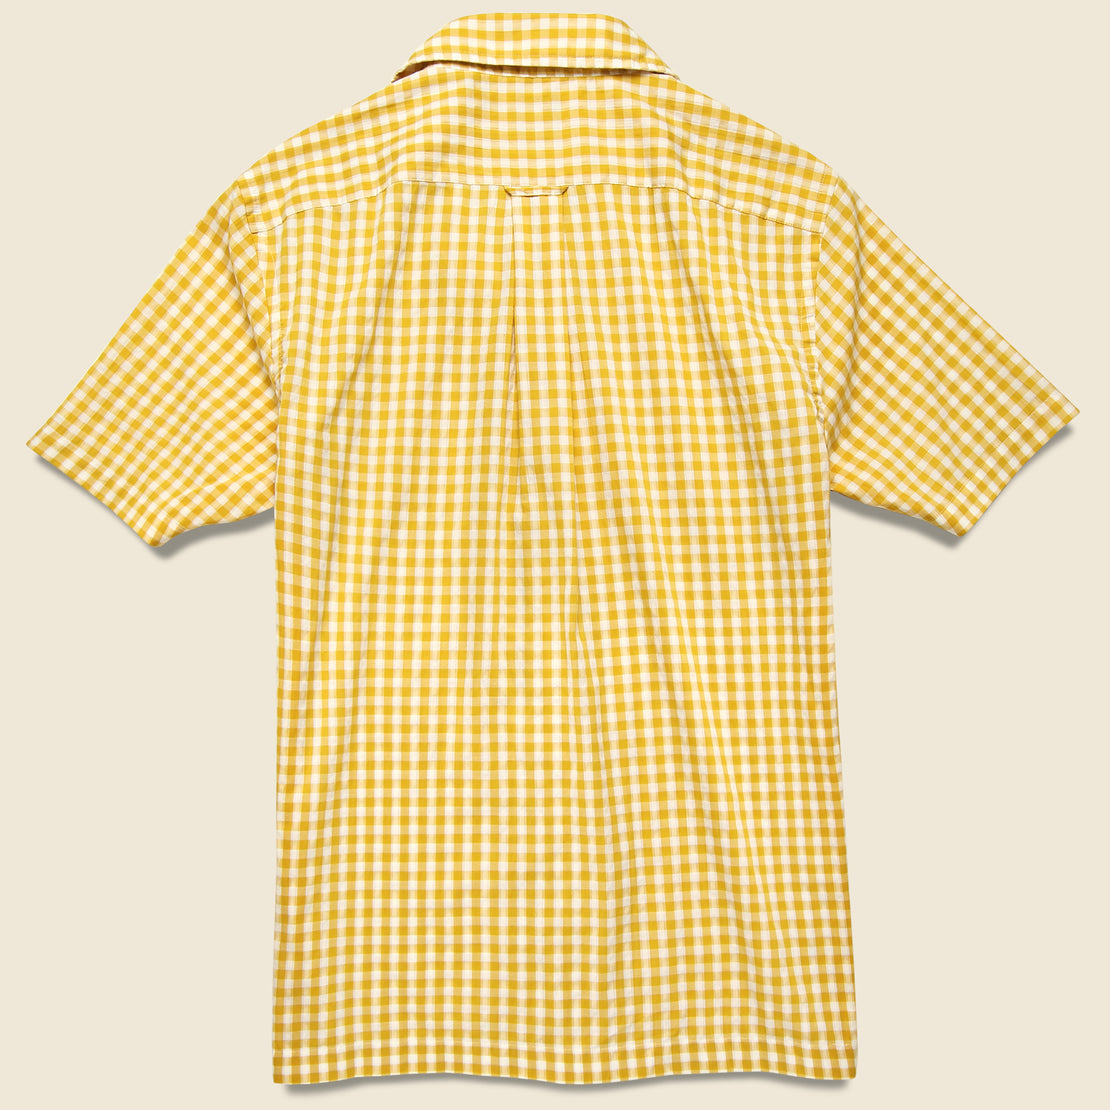 Micro Gingham Camp Shirt - Yellow